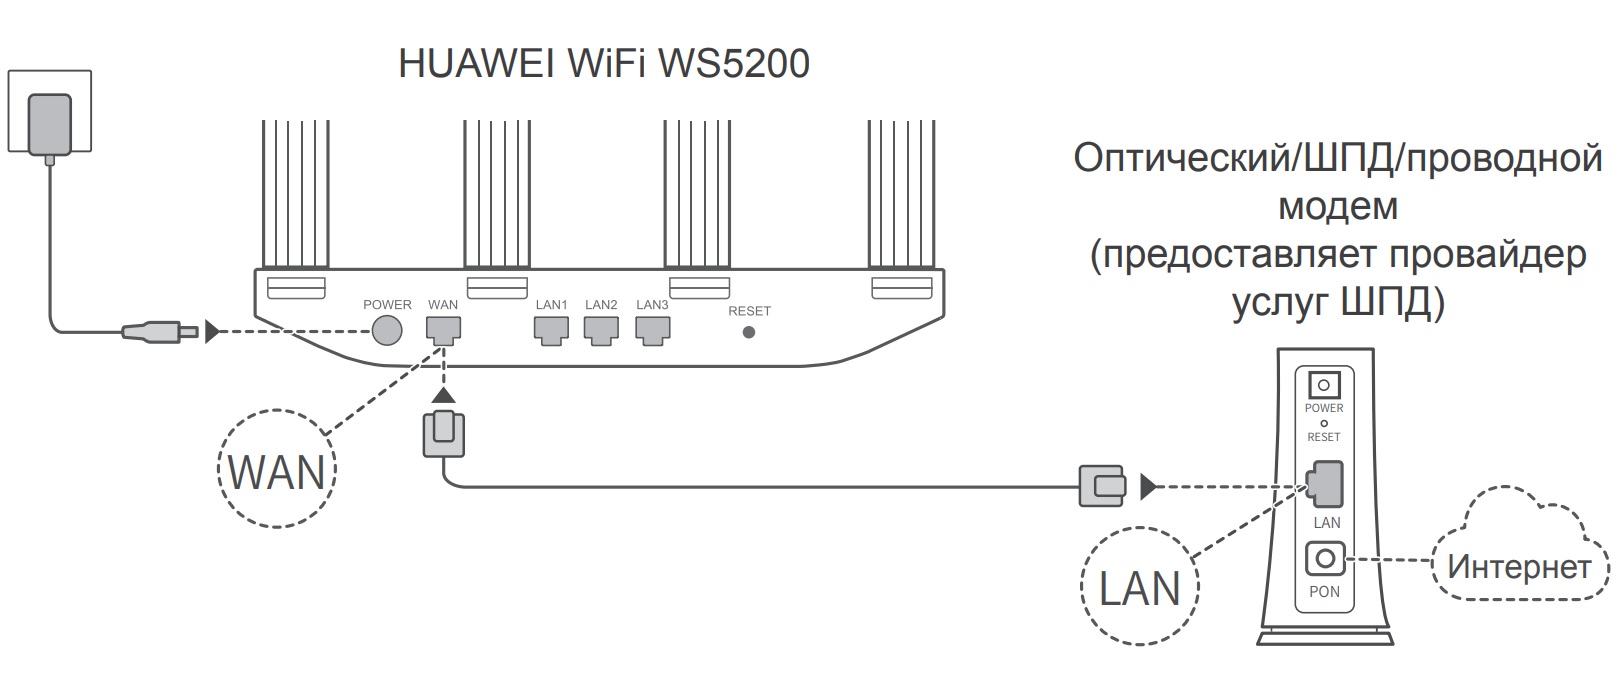 Как Зайти в Личный Кабинет 192.168.8.1 - Подключить USB Модем Huawei и Настроить по WiFi Интернет 3G-4G (LTE) Мегафон, Билайн, МТС, Теле 2 - ВайФайка.РУ